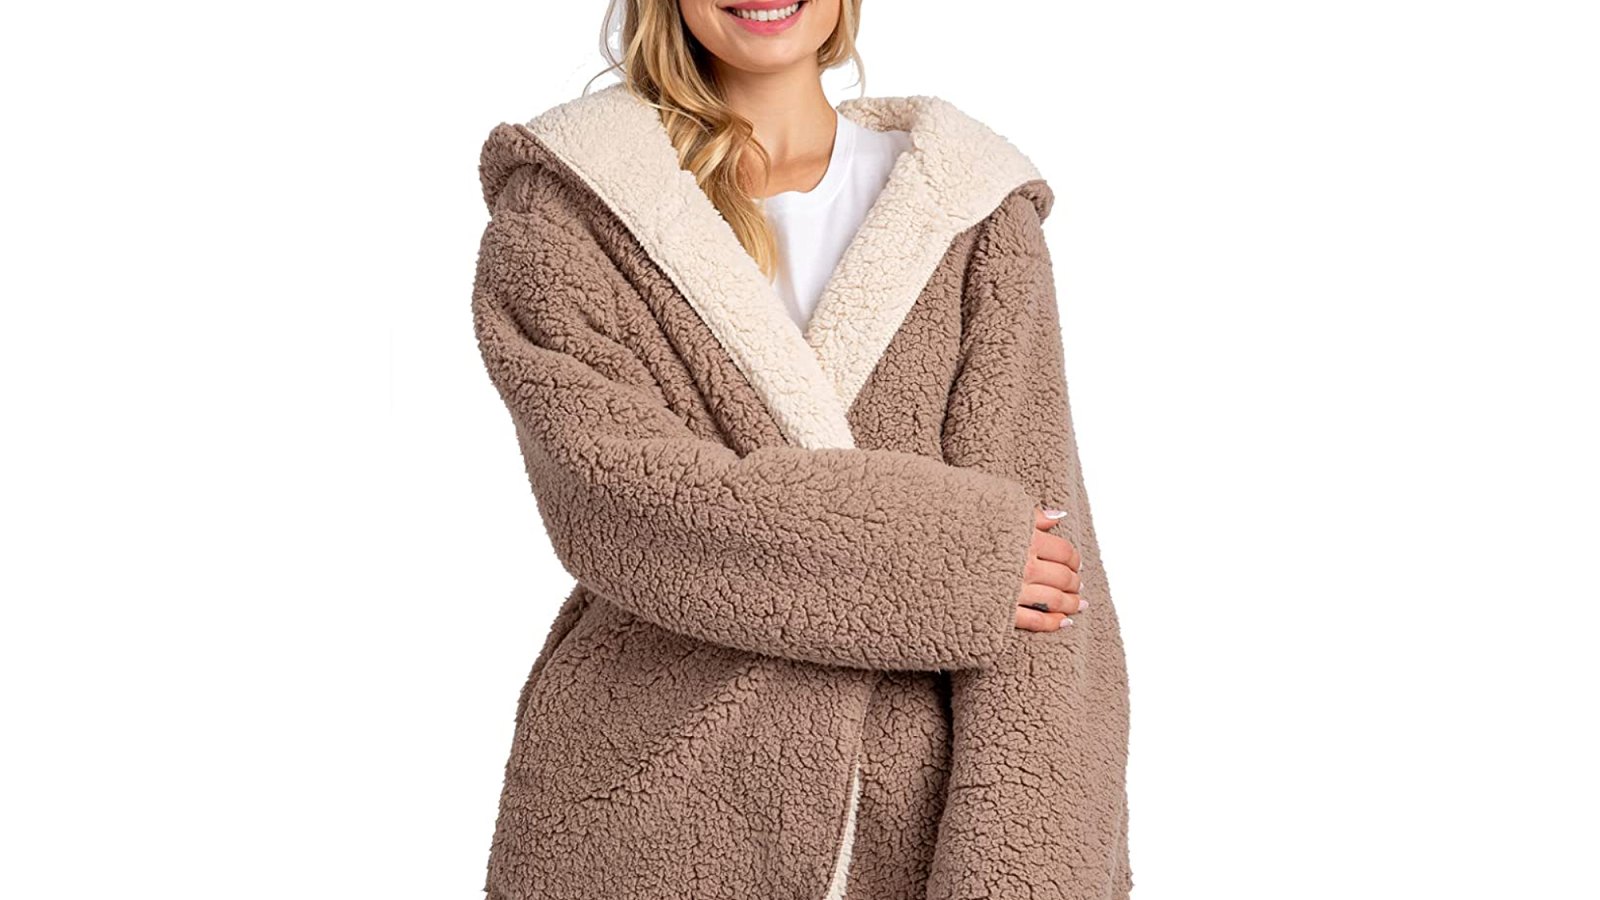 Women Fuzzy Coat / Oversize Hooded Teddy Jacket,Teddy Coat, Winter